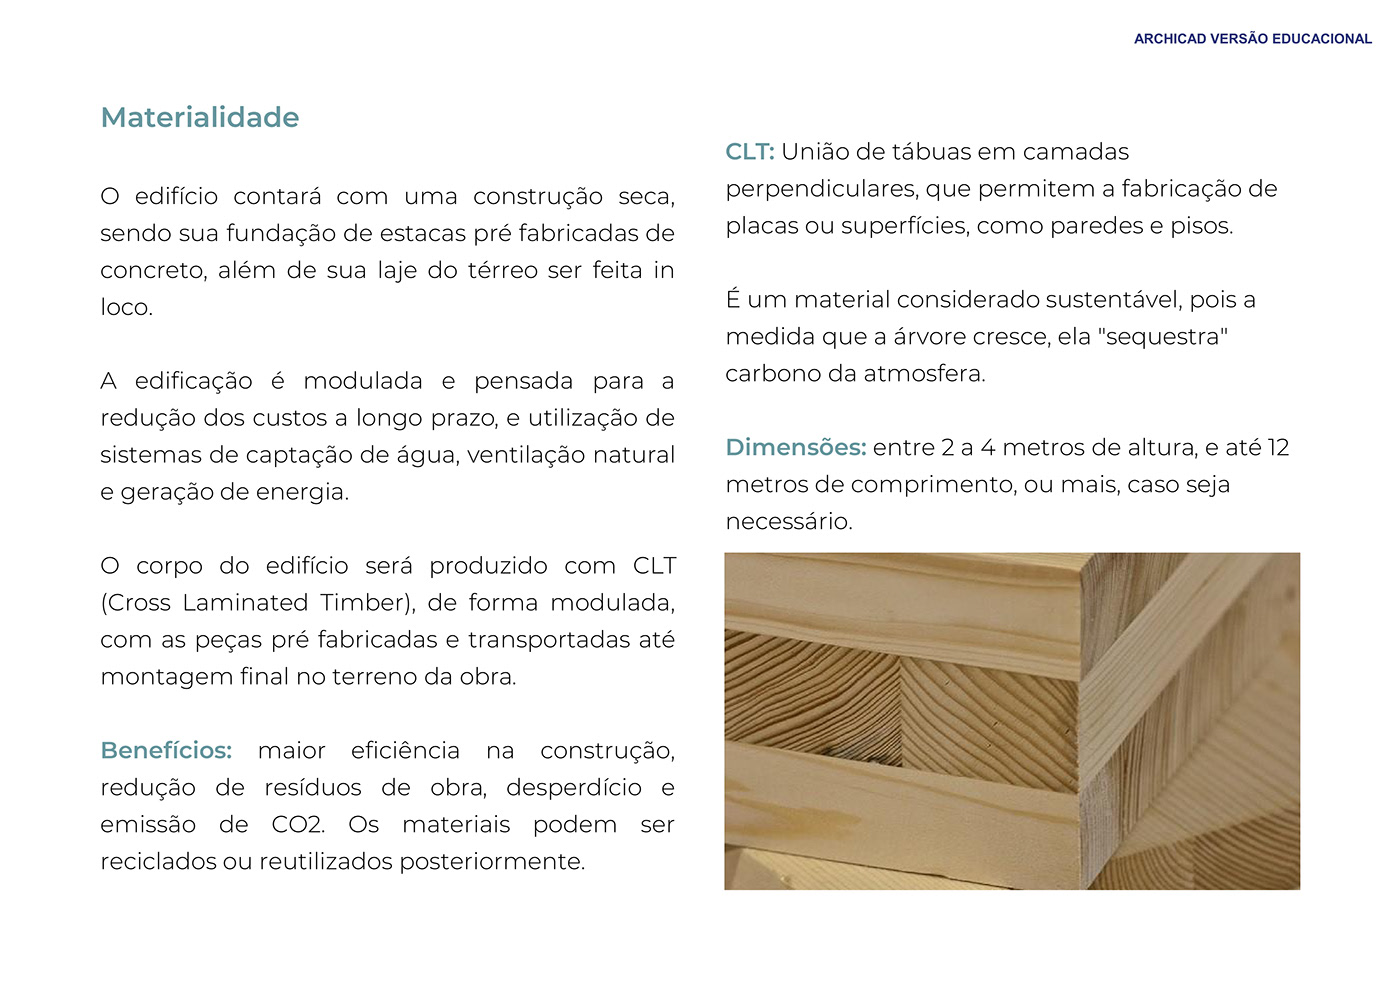 ARQUITETURA architecture Render 3D exterior archviz edificio building coliving Madeira